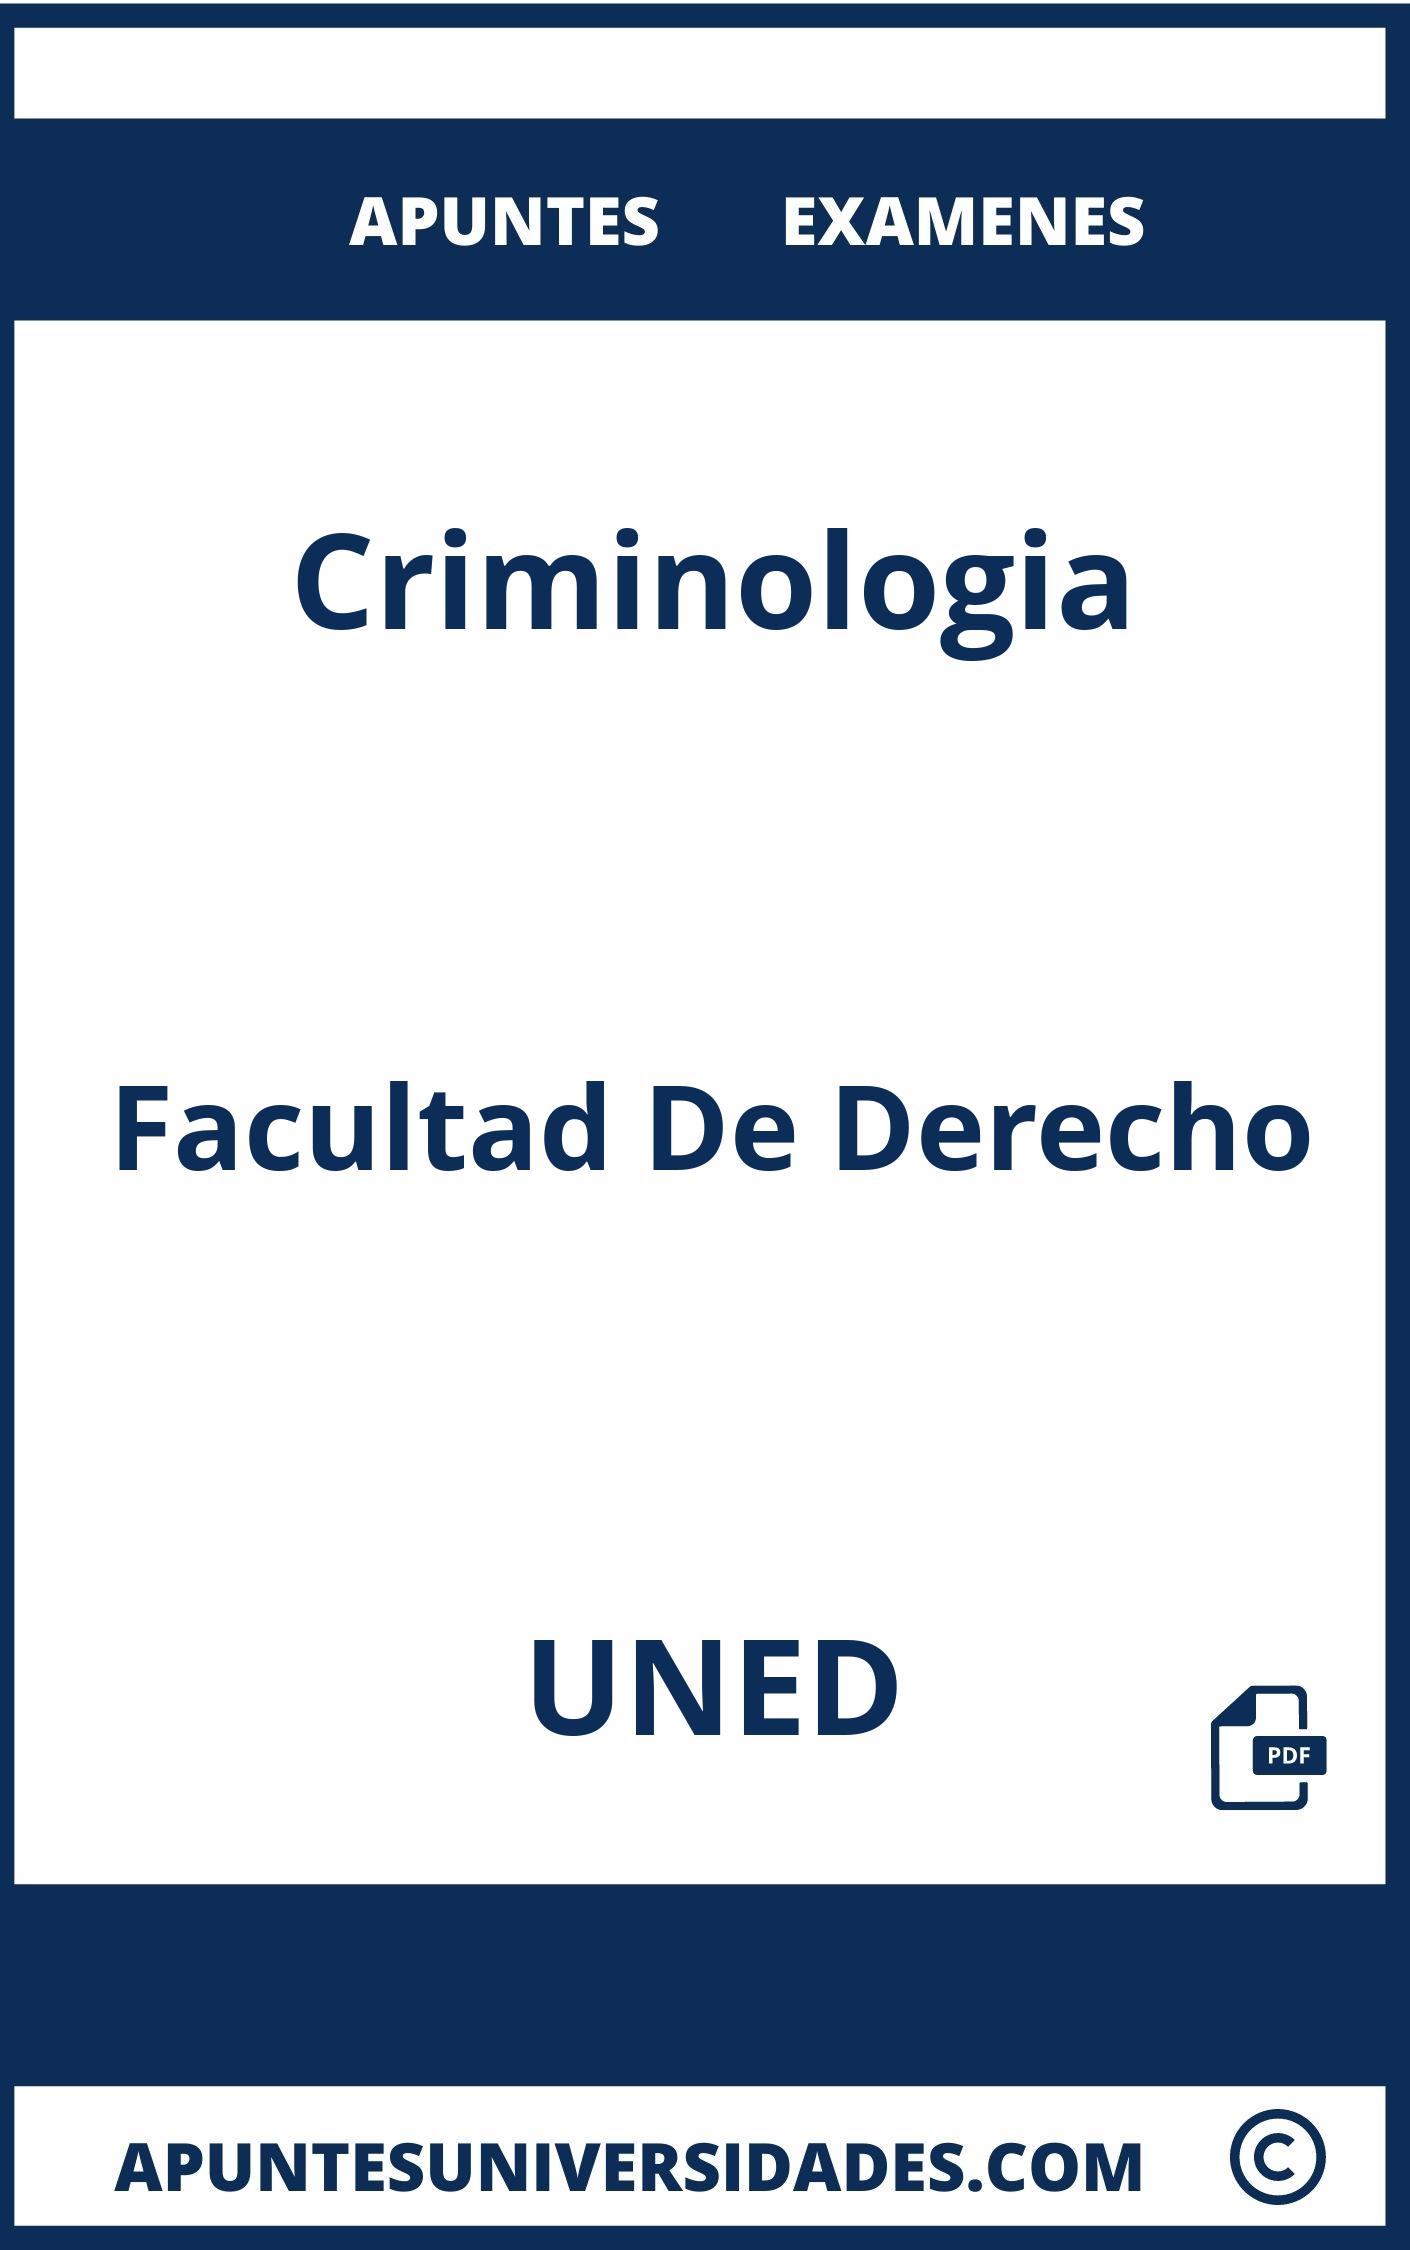 Apuntes Examenes Criminologia UNED